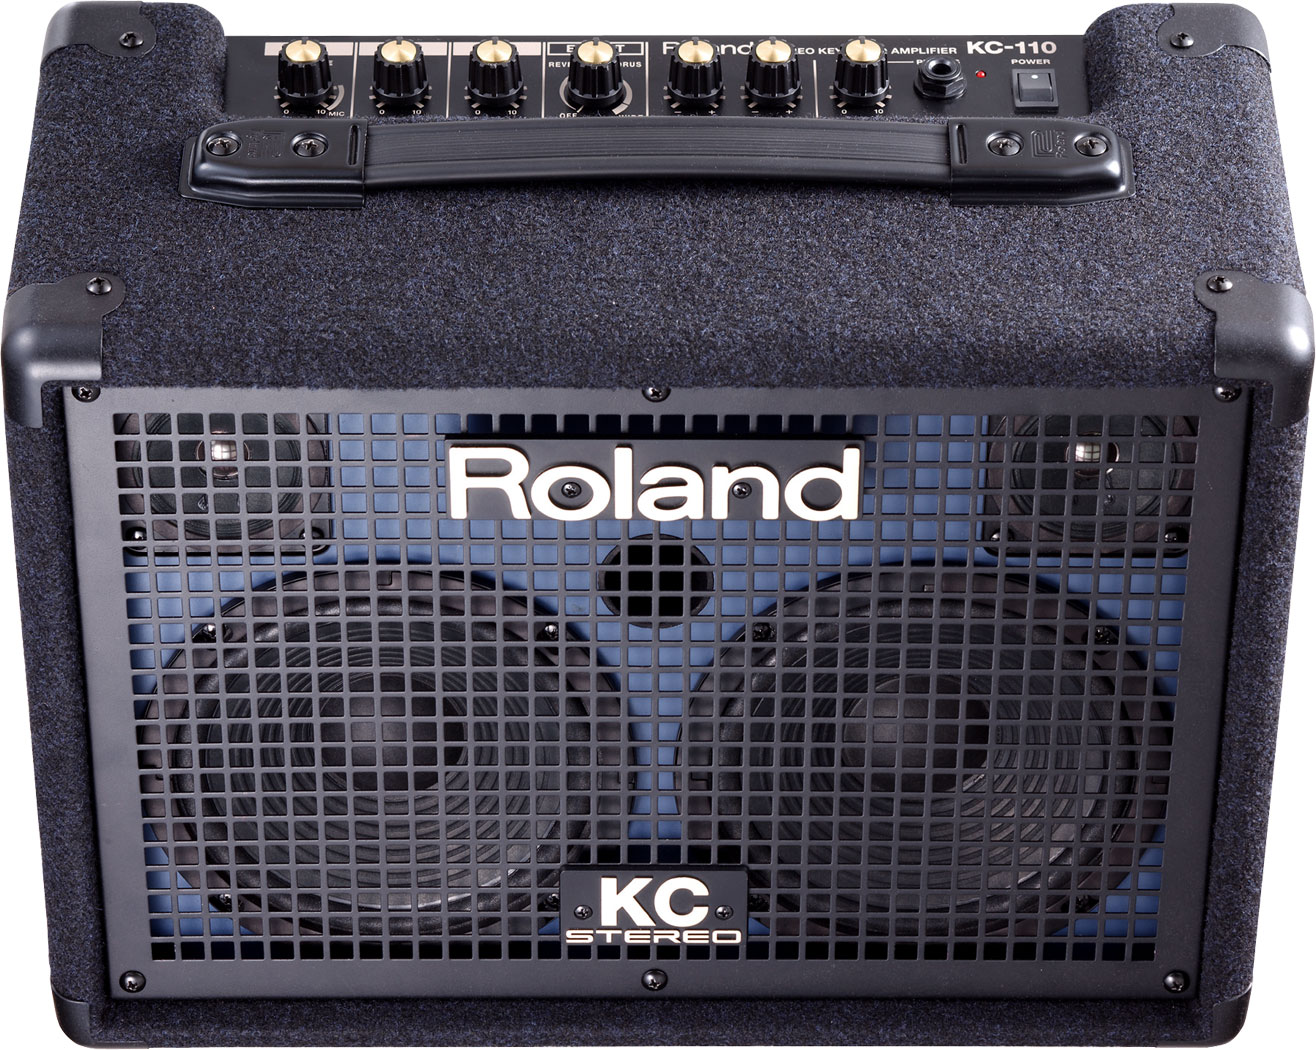 KC-220 Roland Battery-Powered Stereo Keyboard Amplifier 15W + 15W 30 watt